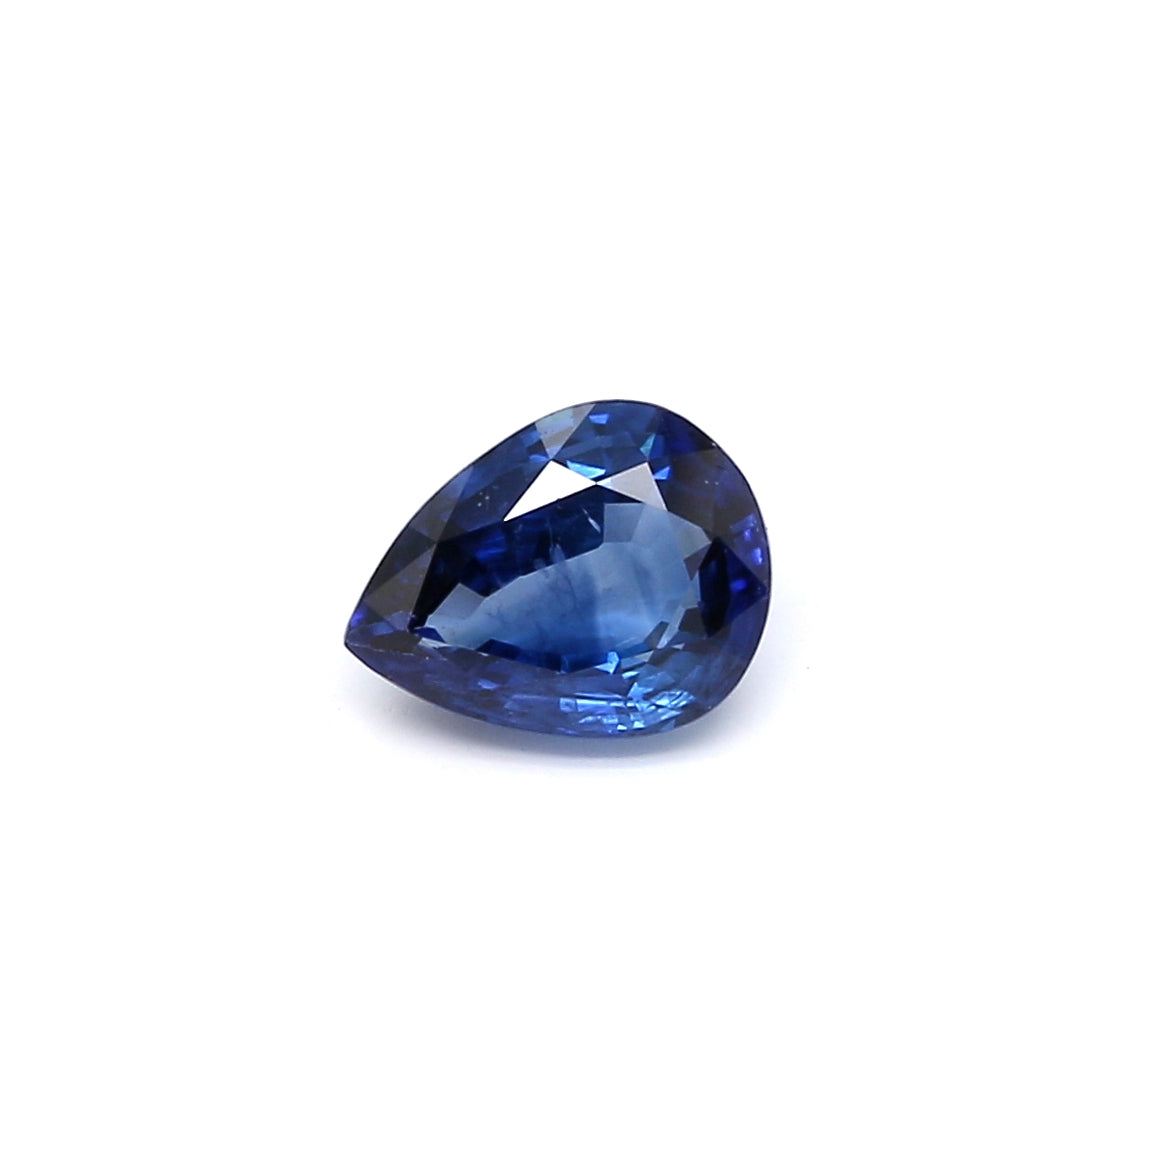 1.29ct Pear Shape Sapphire, Heated, Sri Lanka - 7.65 x 5.97 x 3.39mm